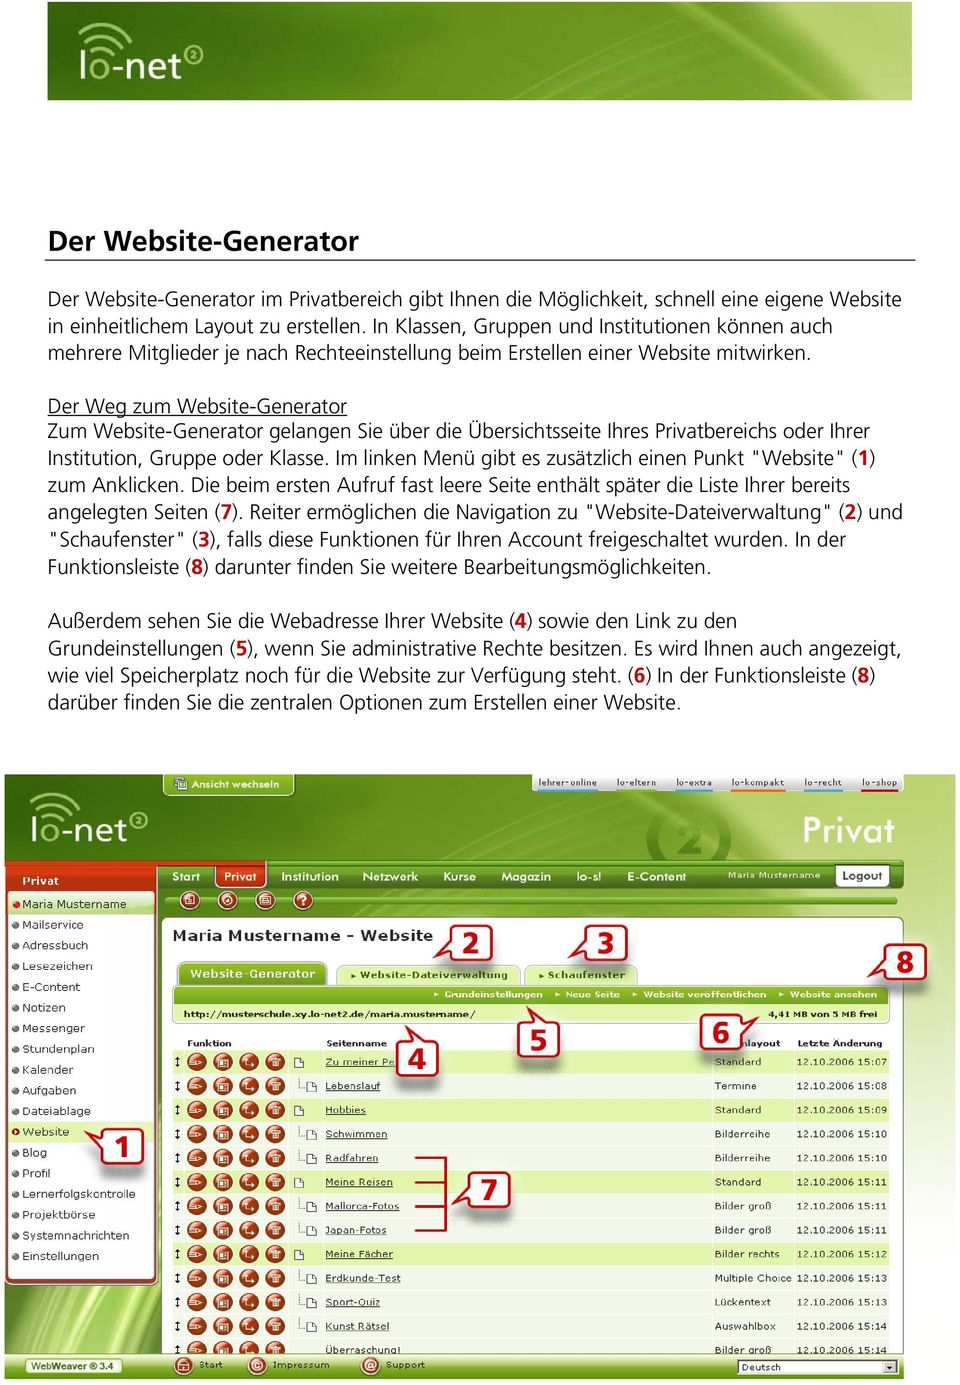 Der Weg zum Website-Generator Zum Website-Generator gelangen Sie über die Übersichtsseite Ihres Privatbereichs oder Ihrer Institution, Gruppe oder Klasse.